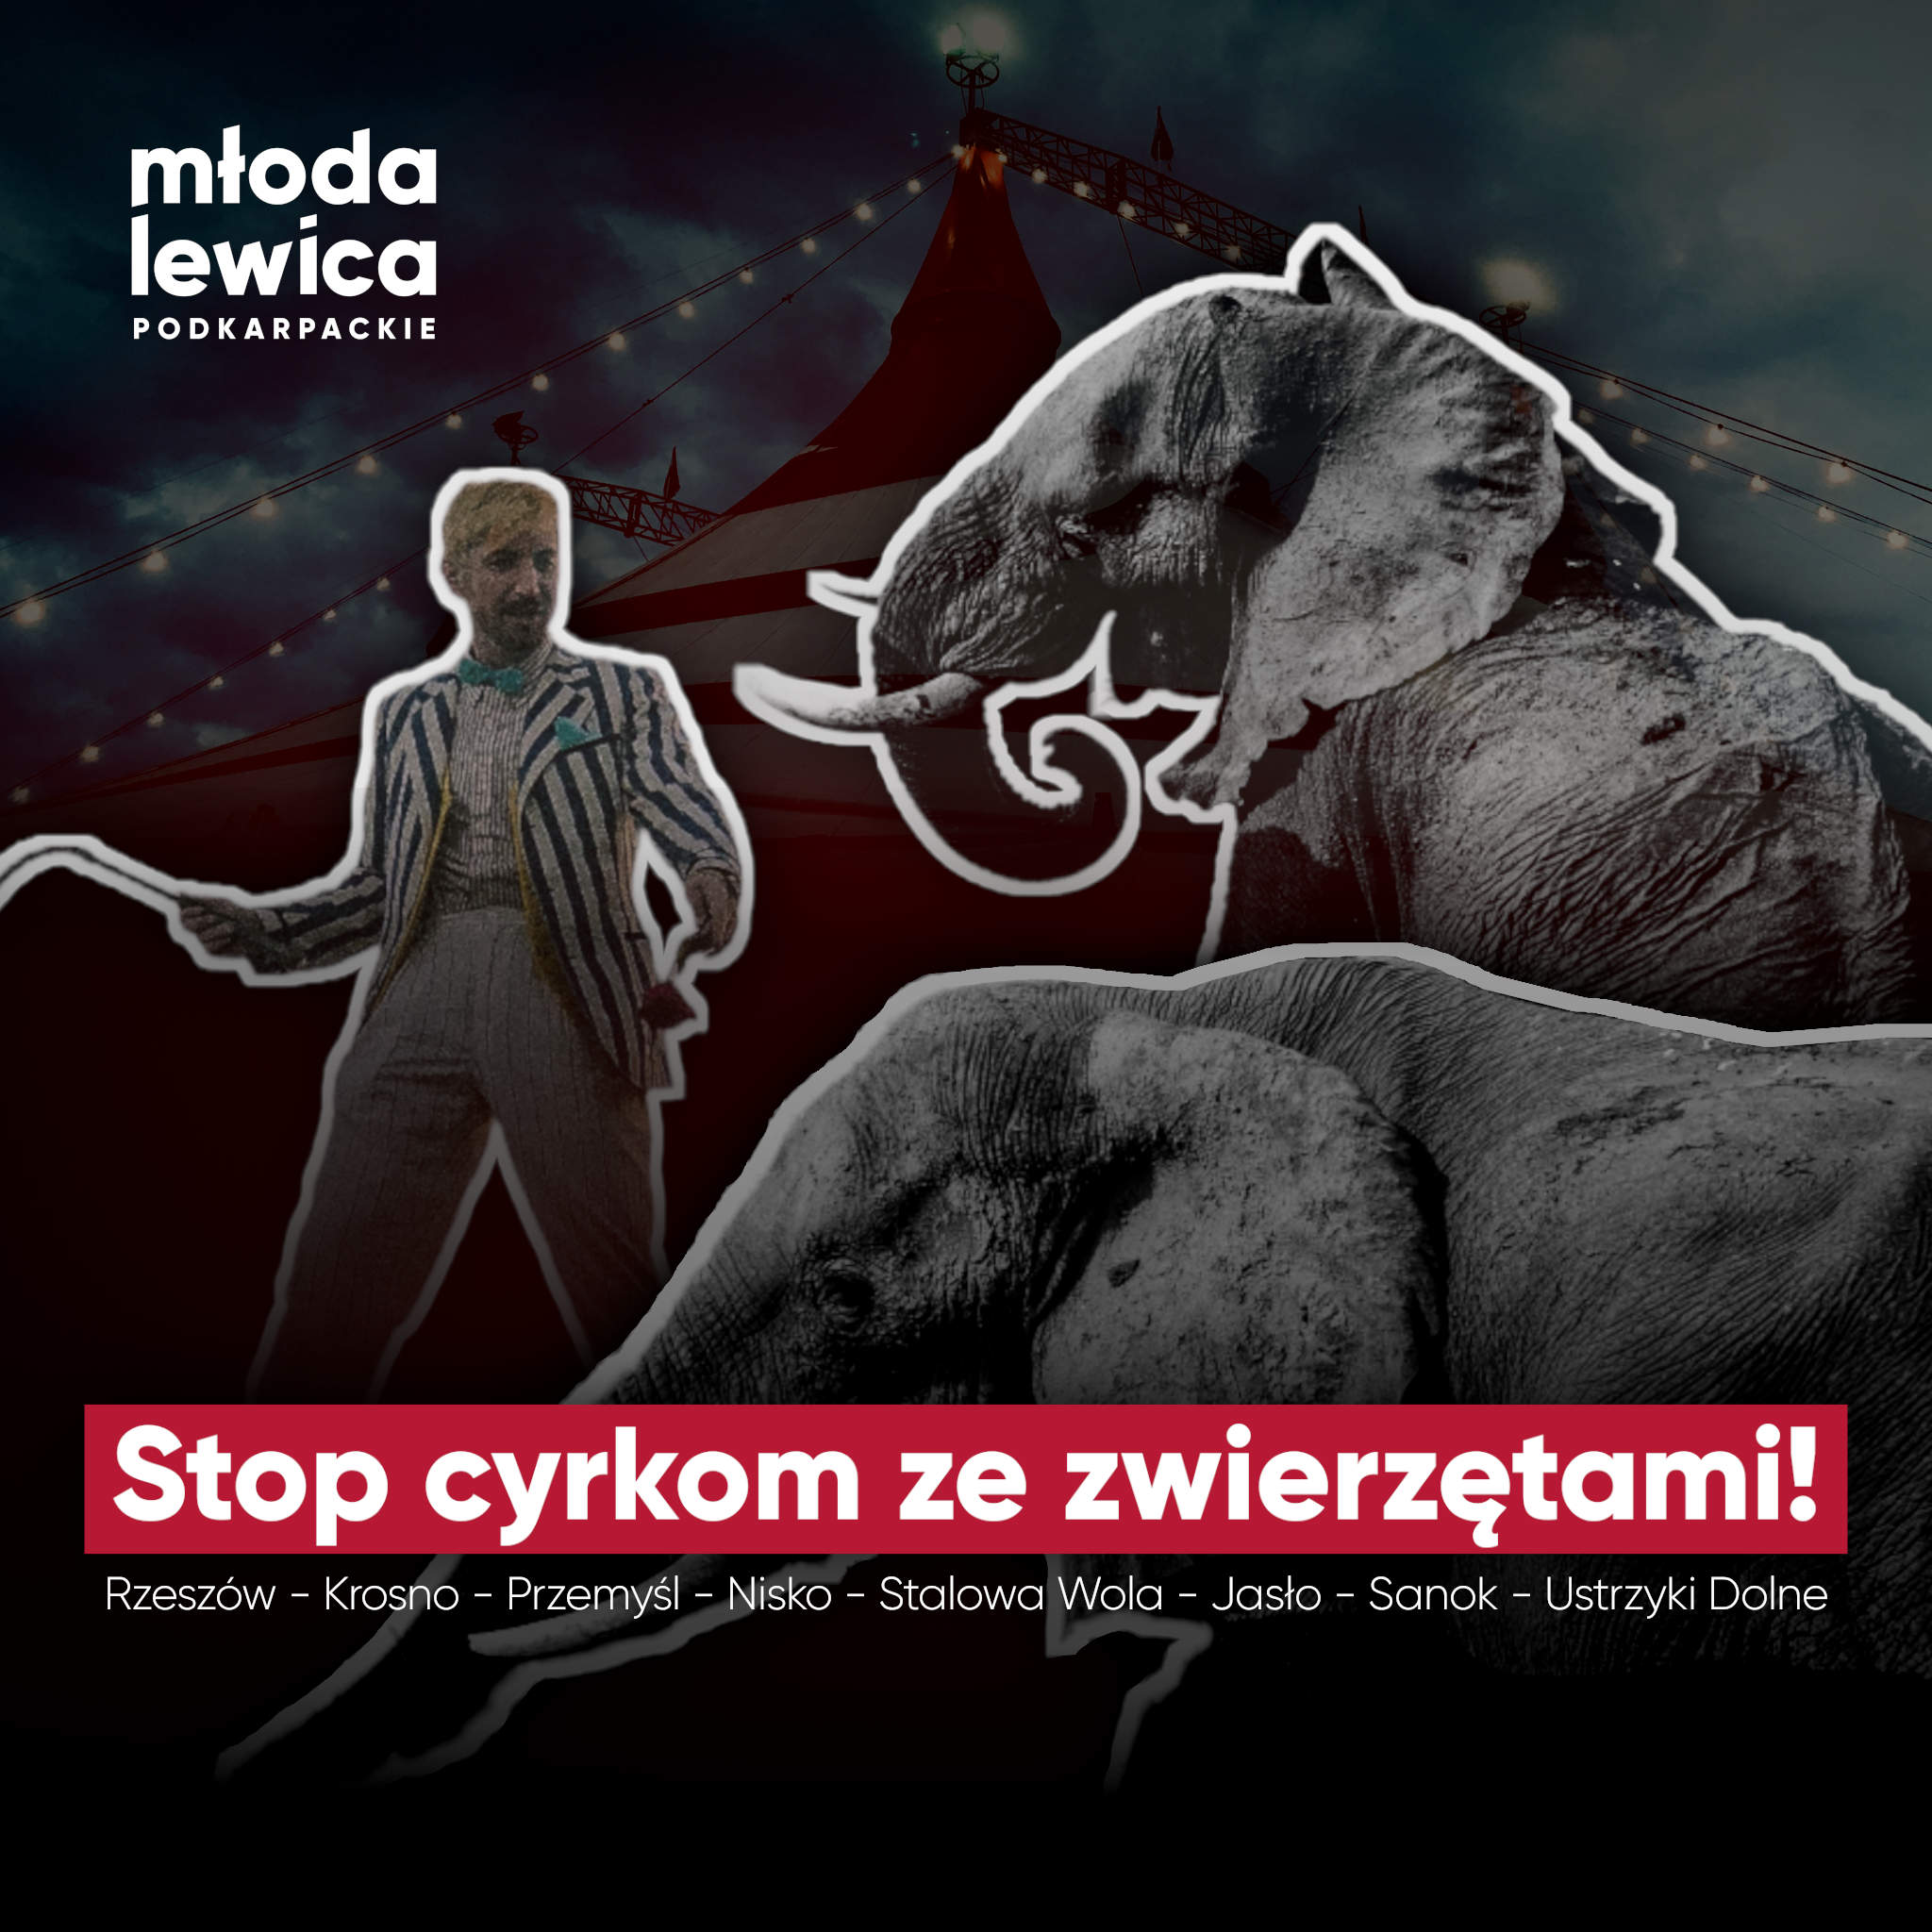  Podkarpacka Młoda Lewica apeluje o zakaz cyrków ze zwierzętami w podkarpackich miastach